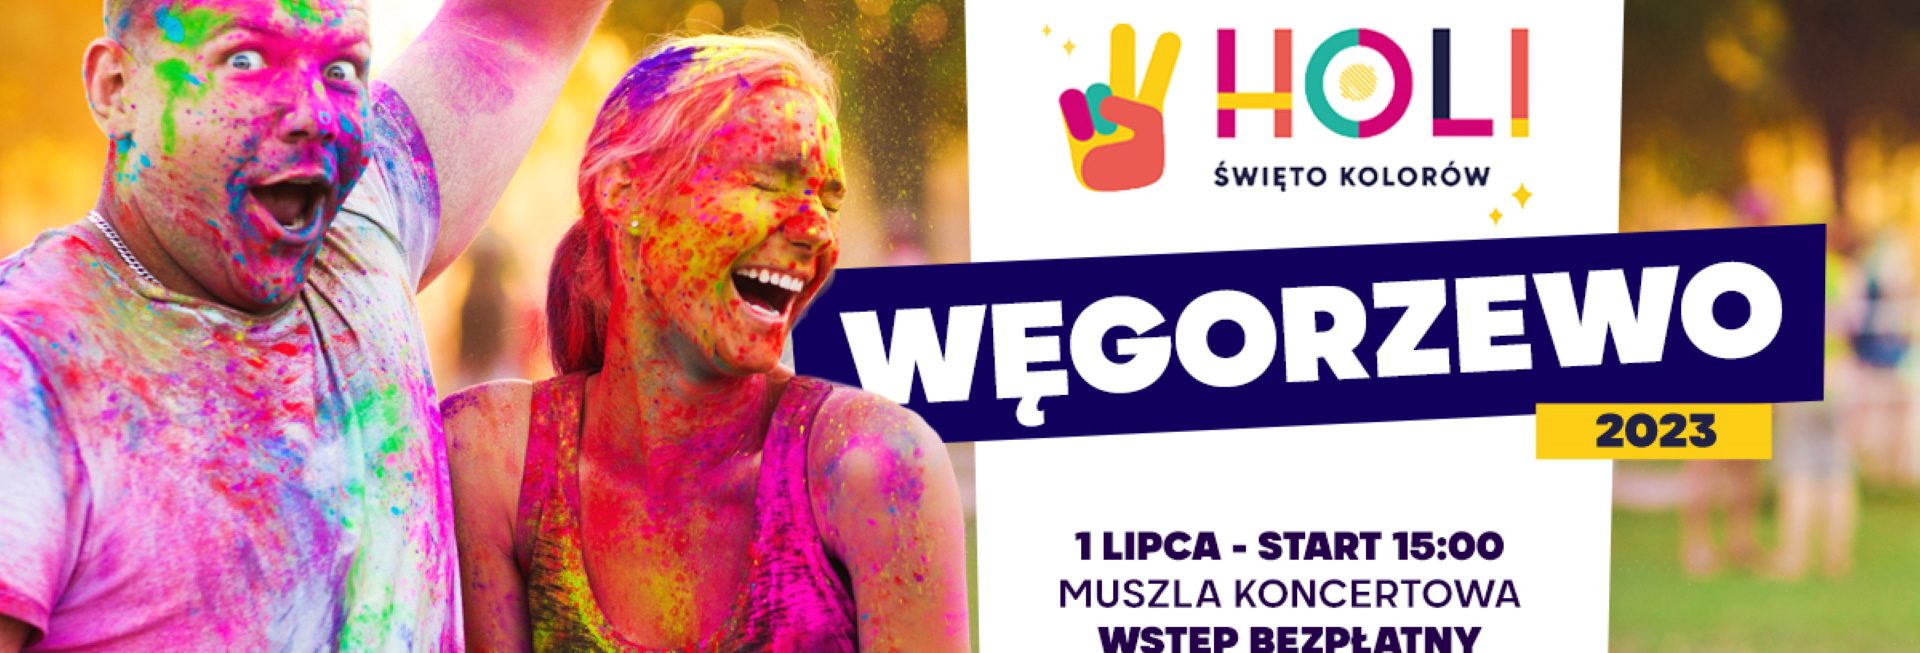 Plakat zapraszający w sobotę 1 lipca 2023 r. do Węgorzewa na Holi Święto Kolorów Węgorzewo 2023.